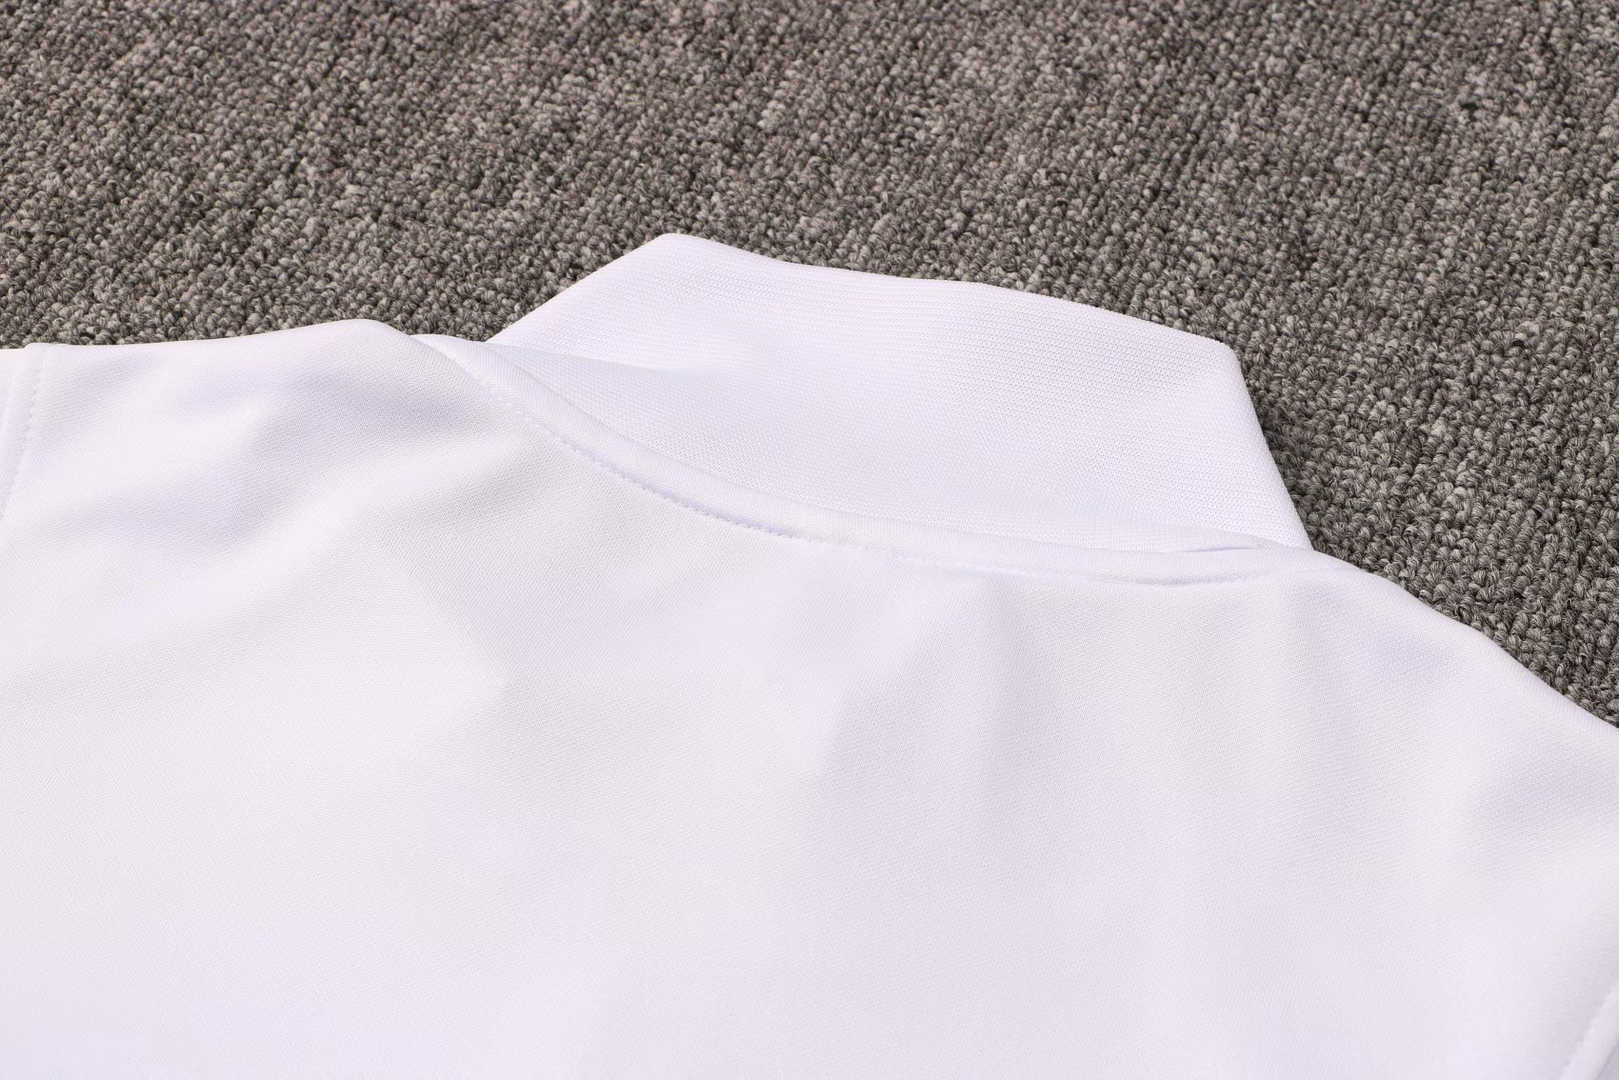 2021/22 PSG x Jordan White Soccer Training Suit (Jacket + Pants) Mens 